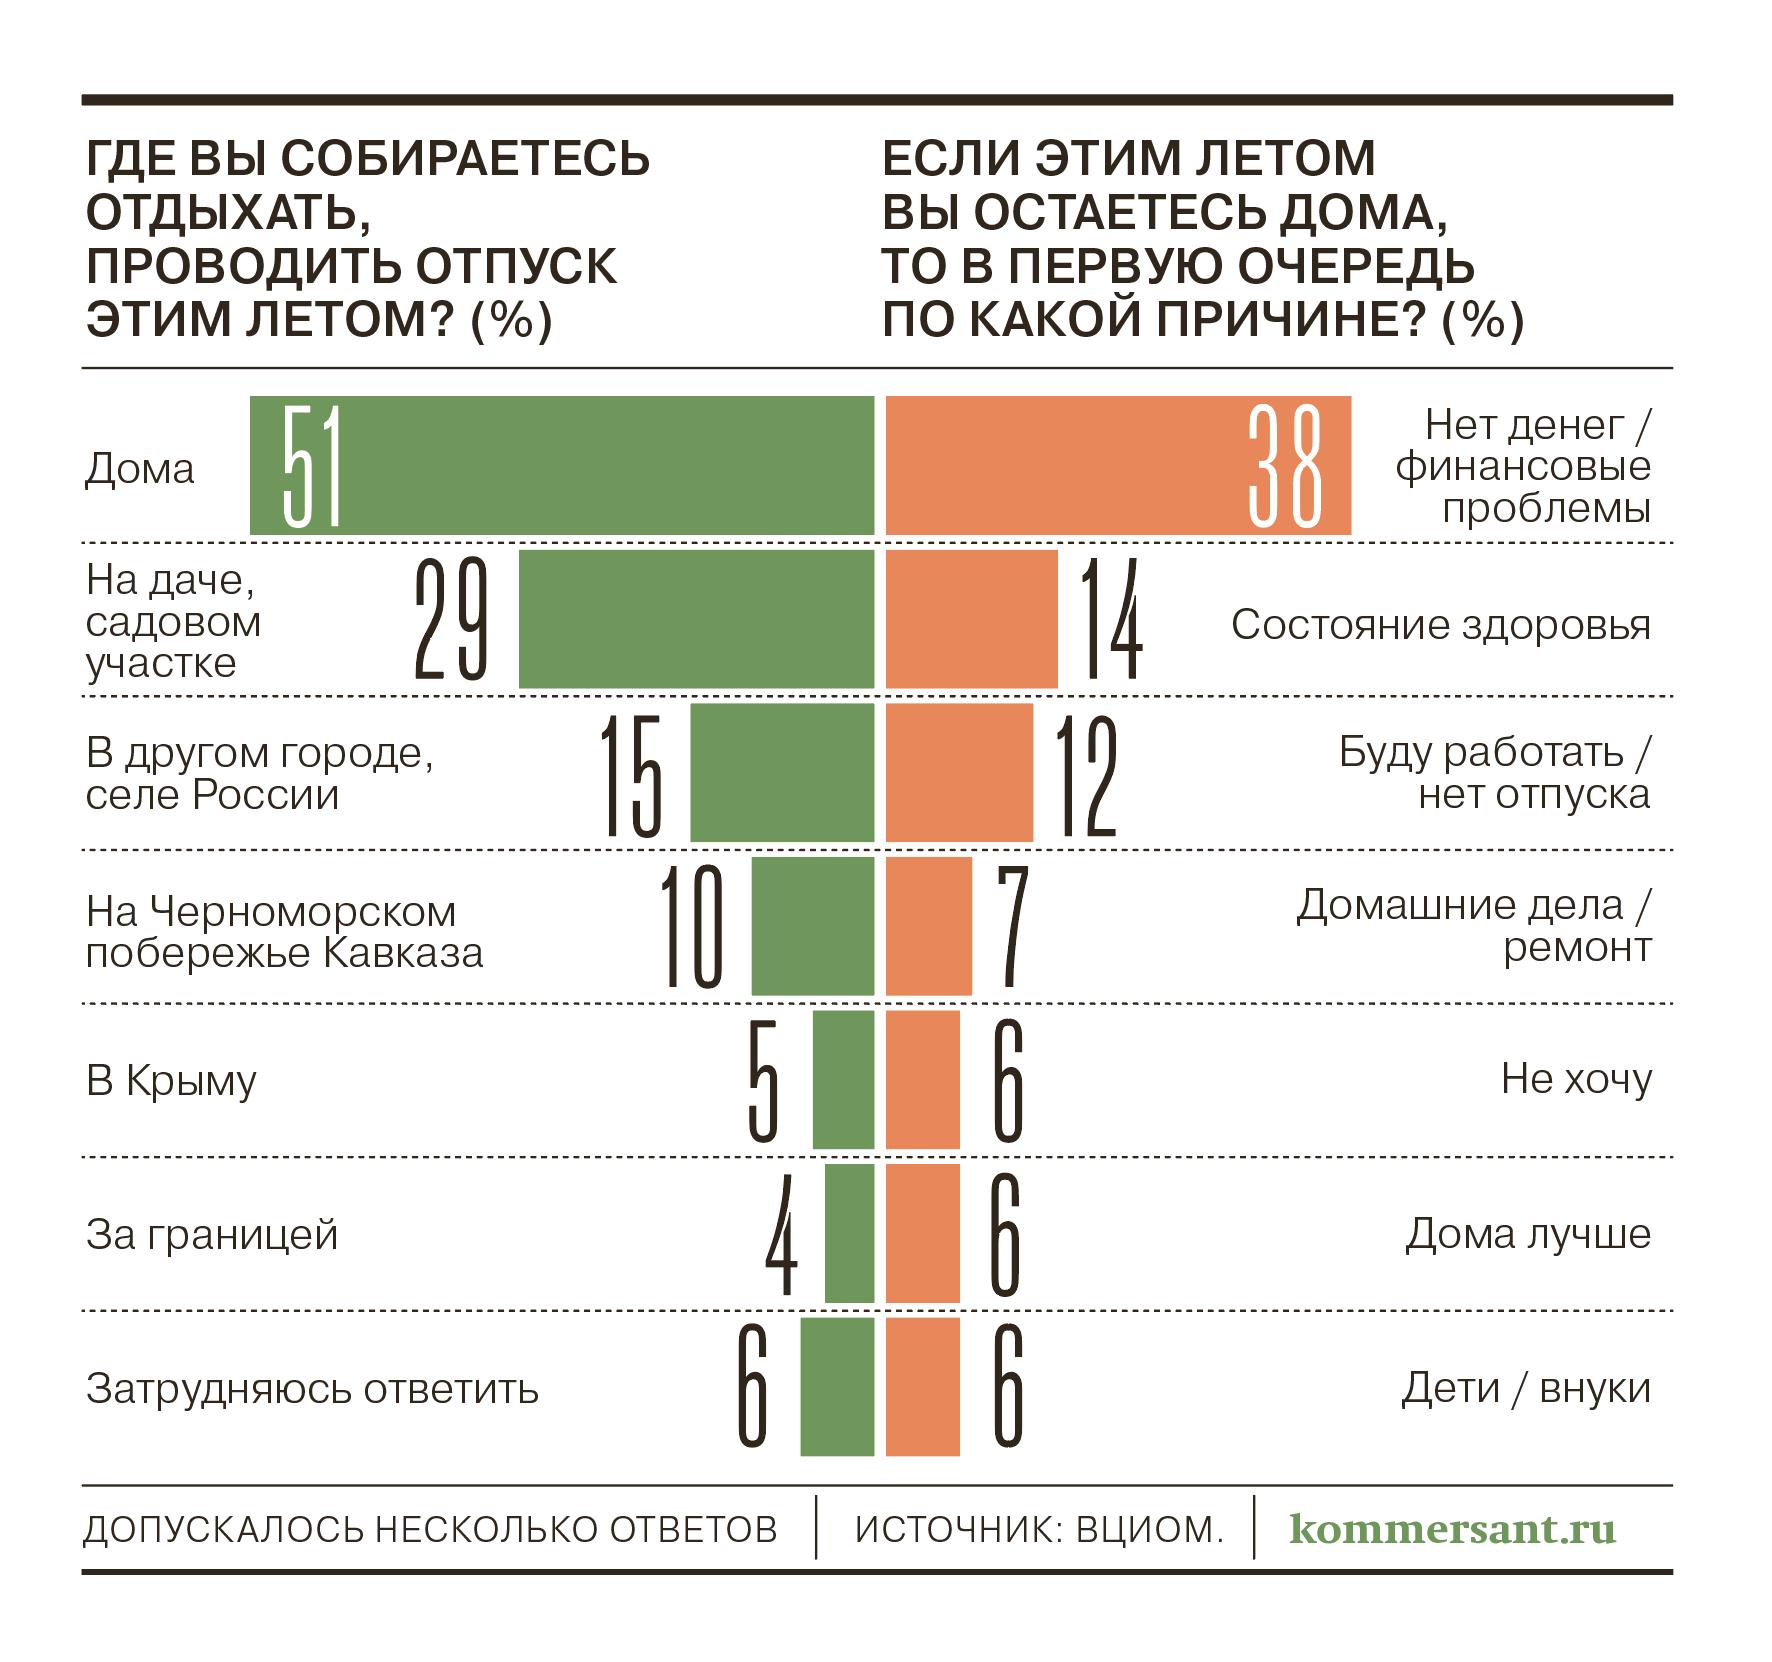 Большинство россиян планируют летом отдыхать дома или на даче